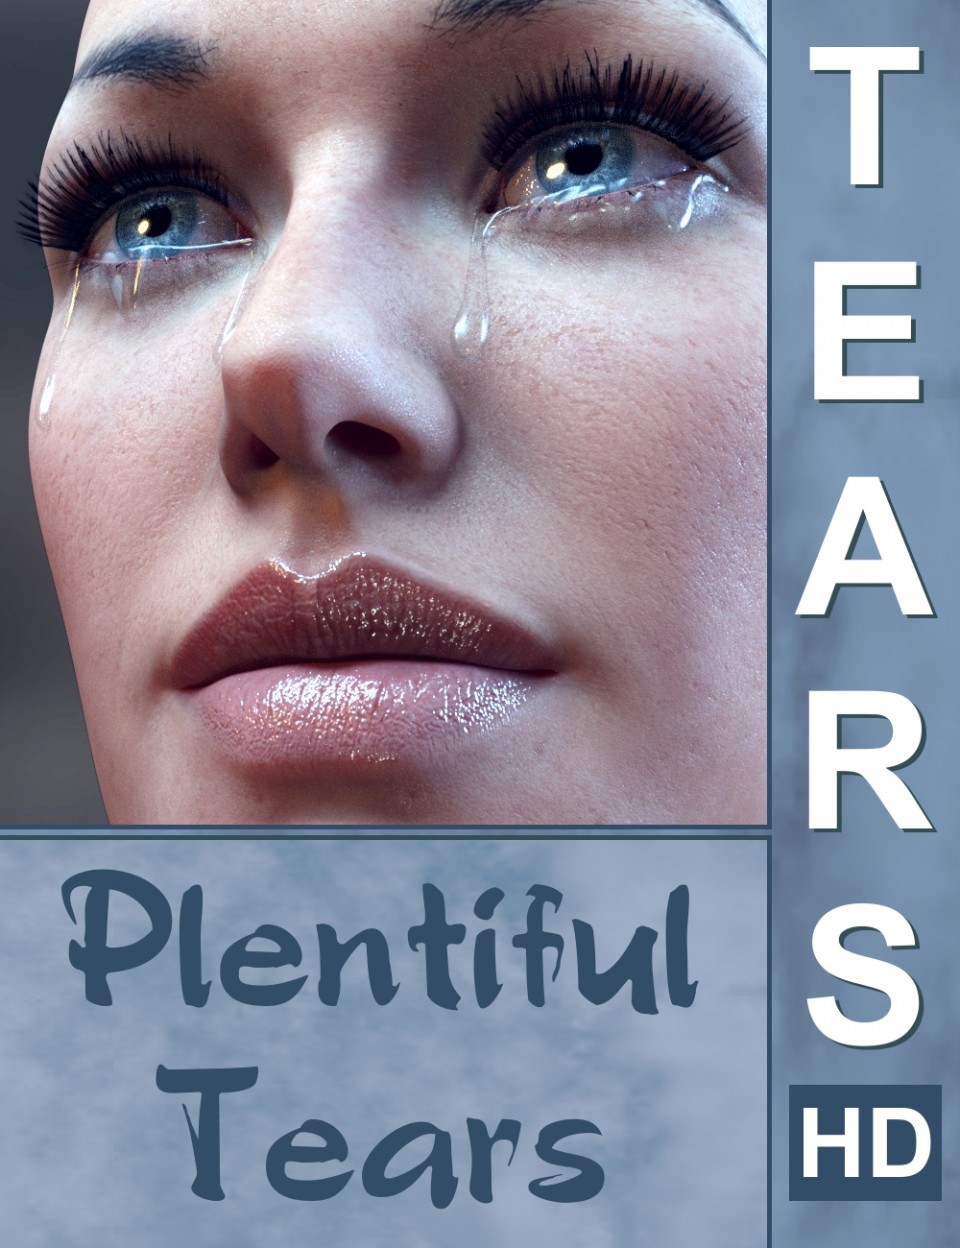 Tears HD Plentiful Tears_DAZ3DDL